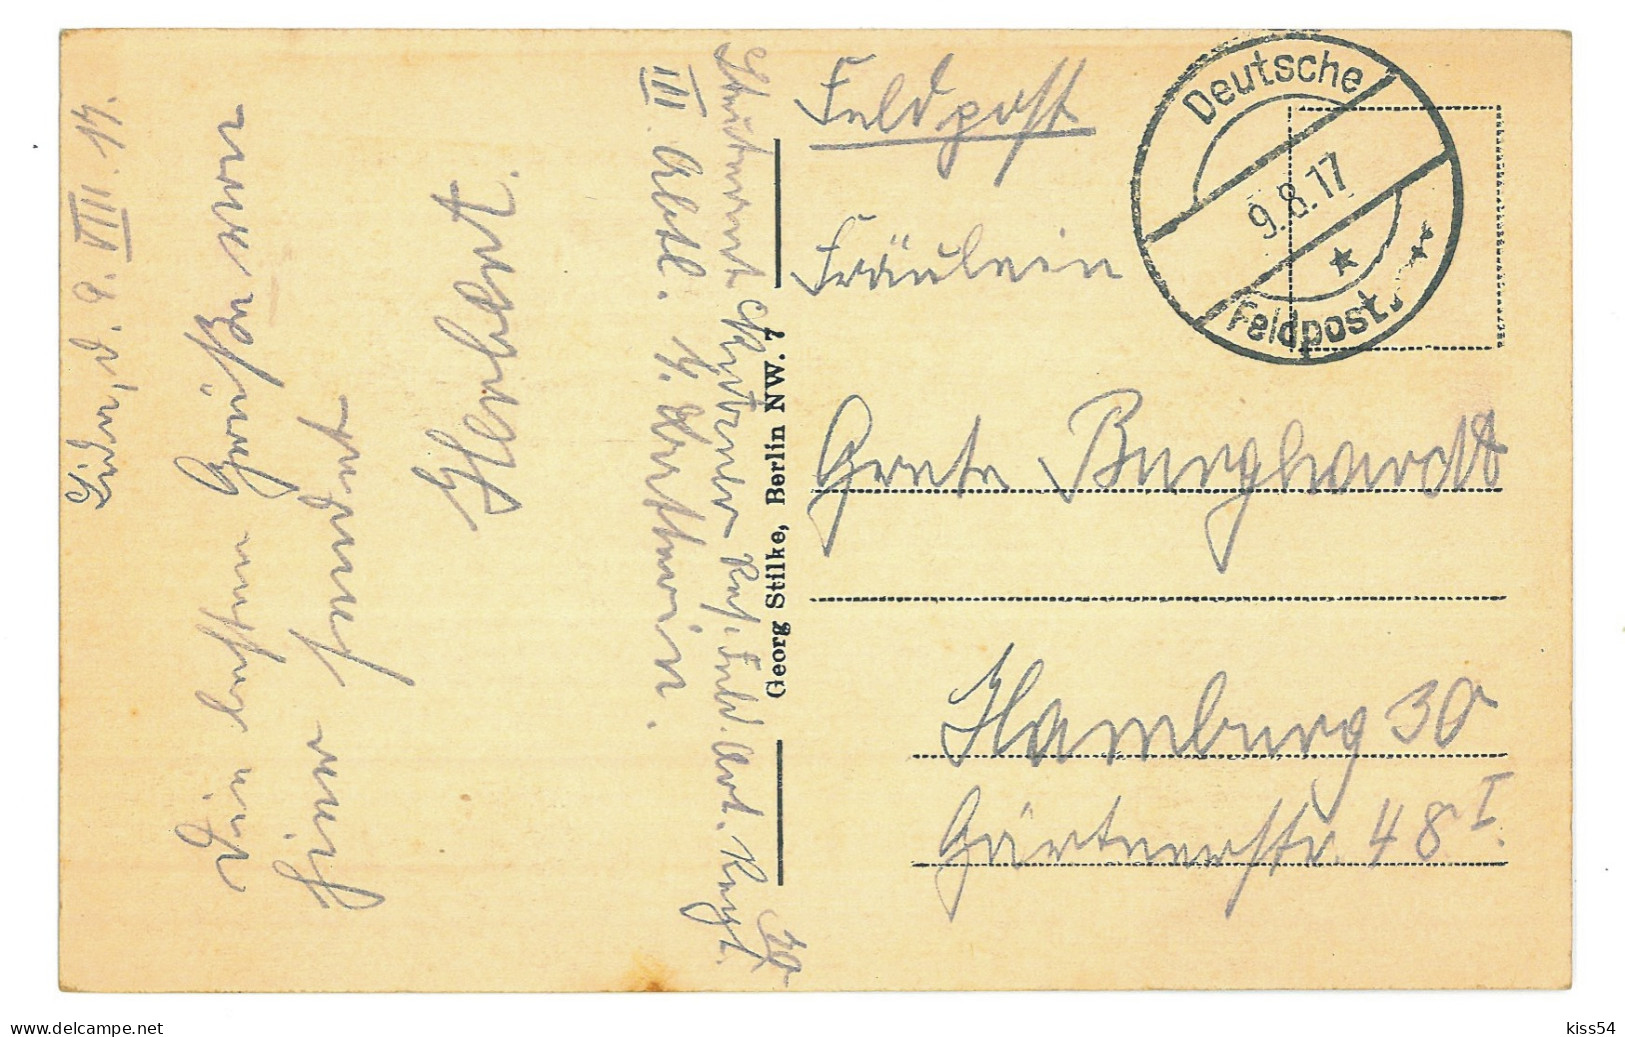 BL 27 - 24549 LIDA, Beyond The River, Belarus - Old Postcard, CENSOR - Used - 1917 - Belarus